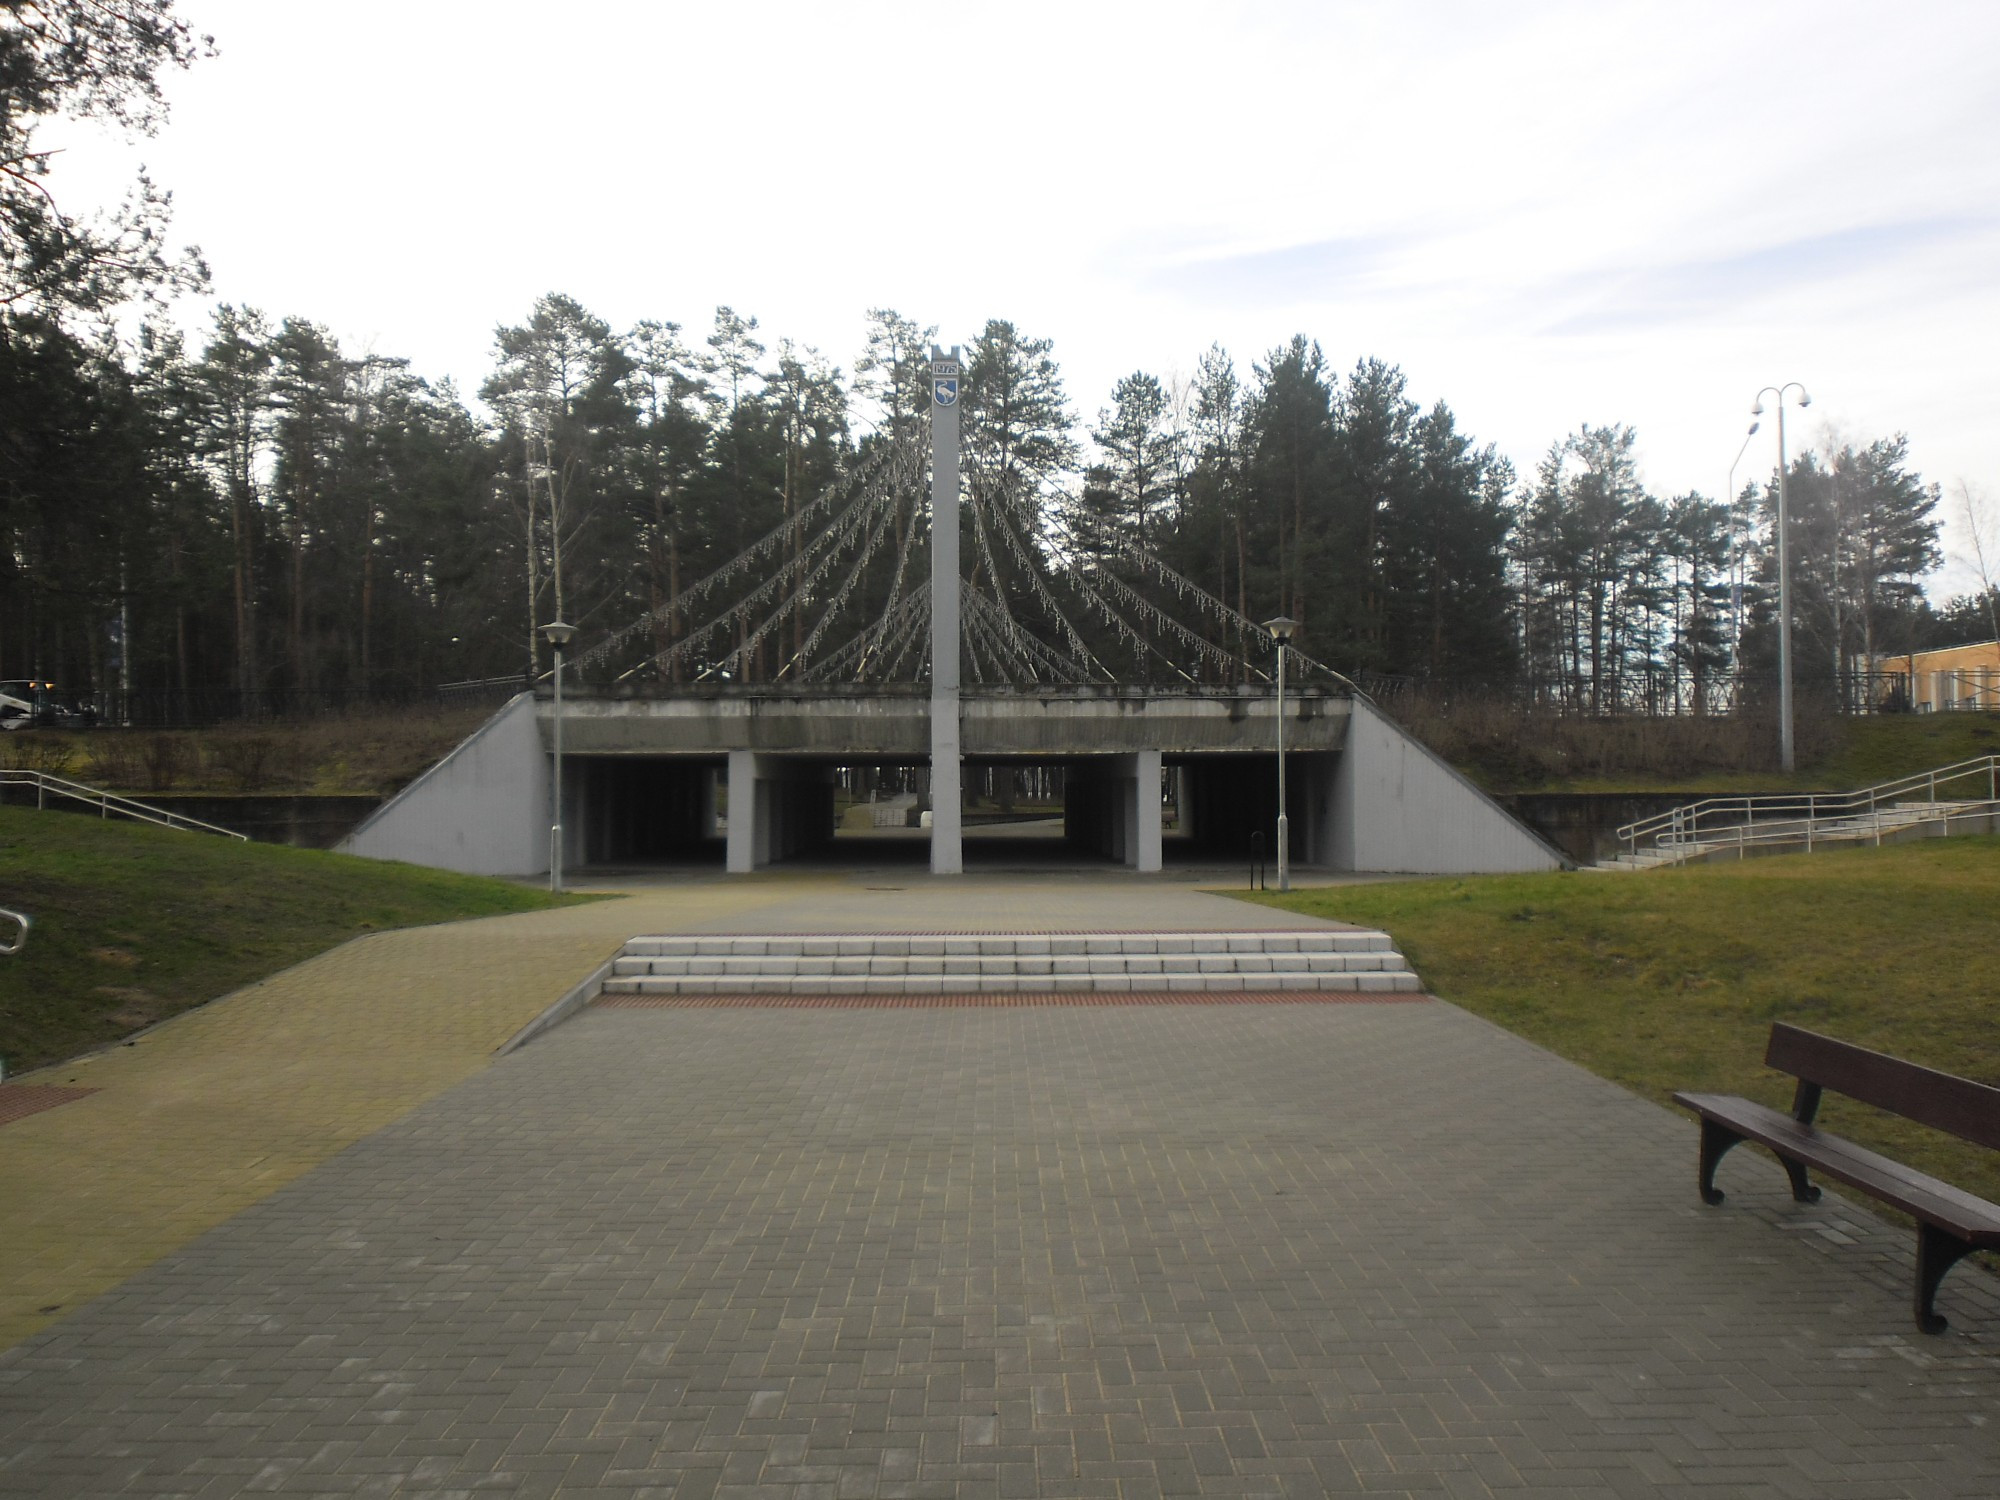 Visaginas, Lithuania